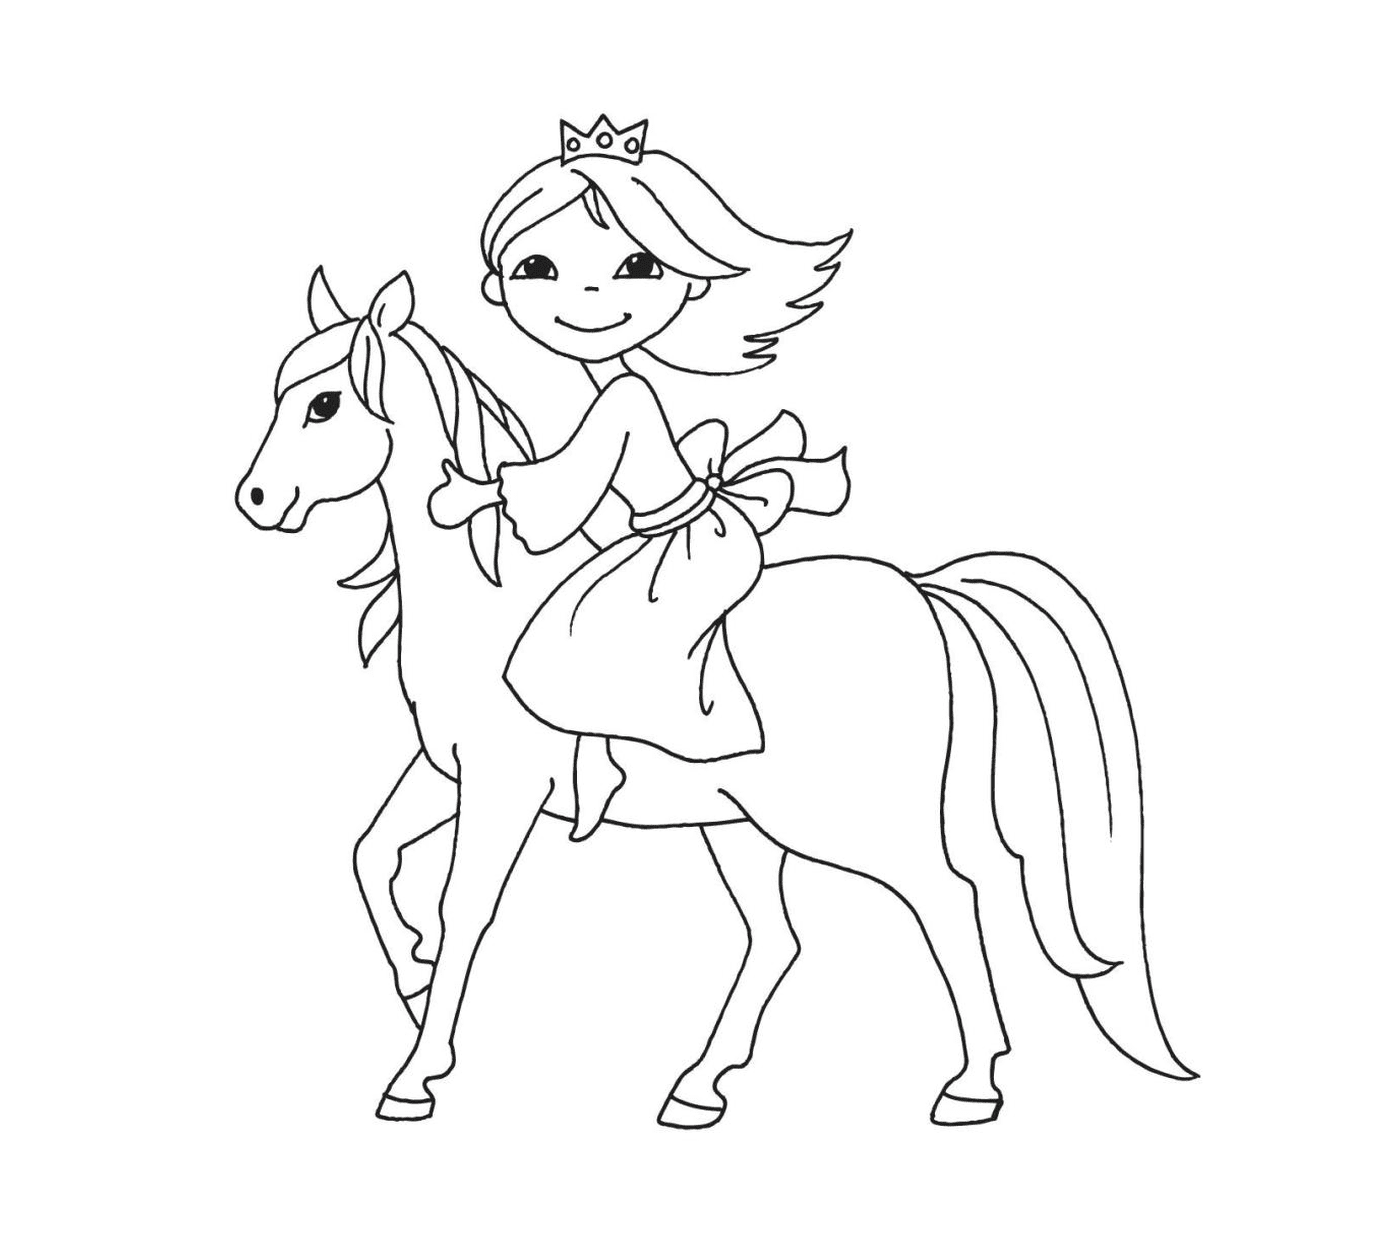  小公主骑马 